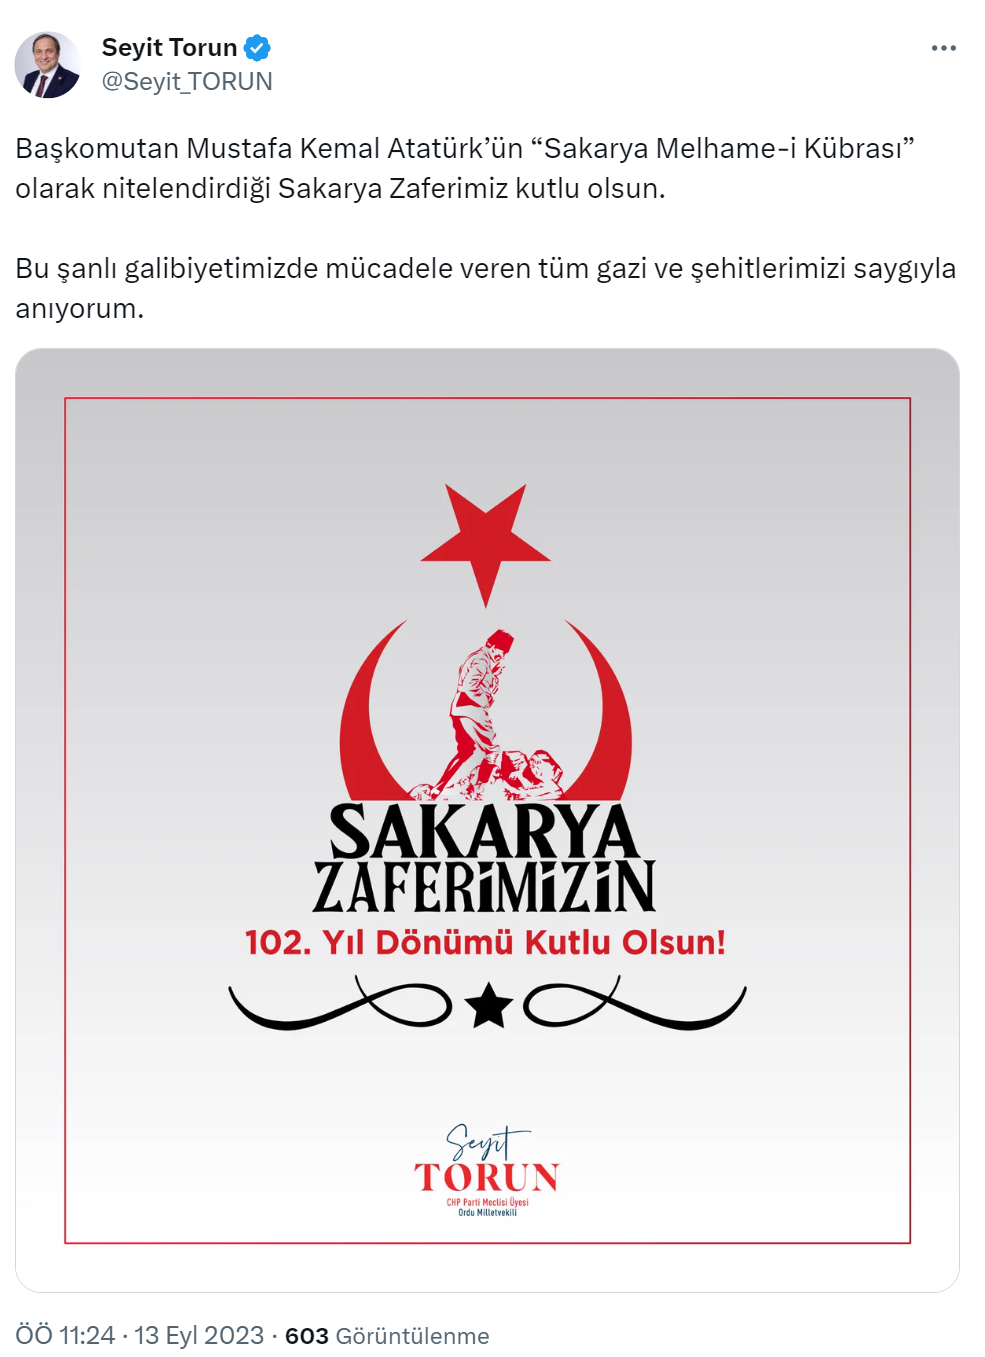 CHP’li Torun’dan Sakarya Meydan Muharebesi’nin 102. yıl dönümü mesajı